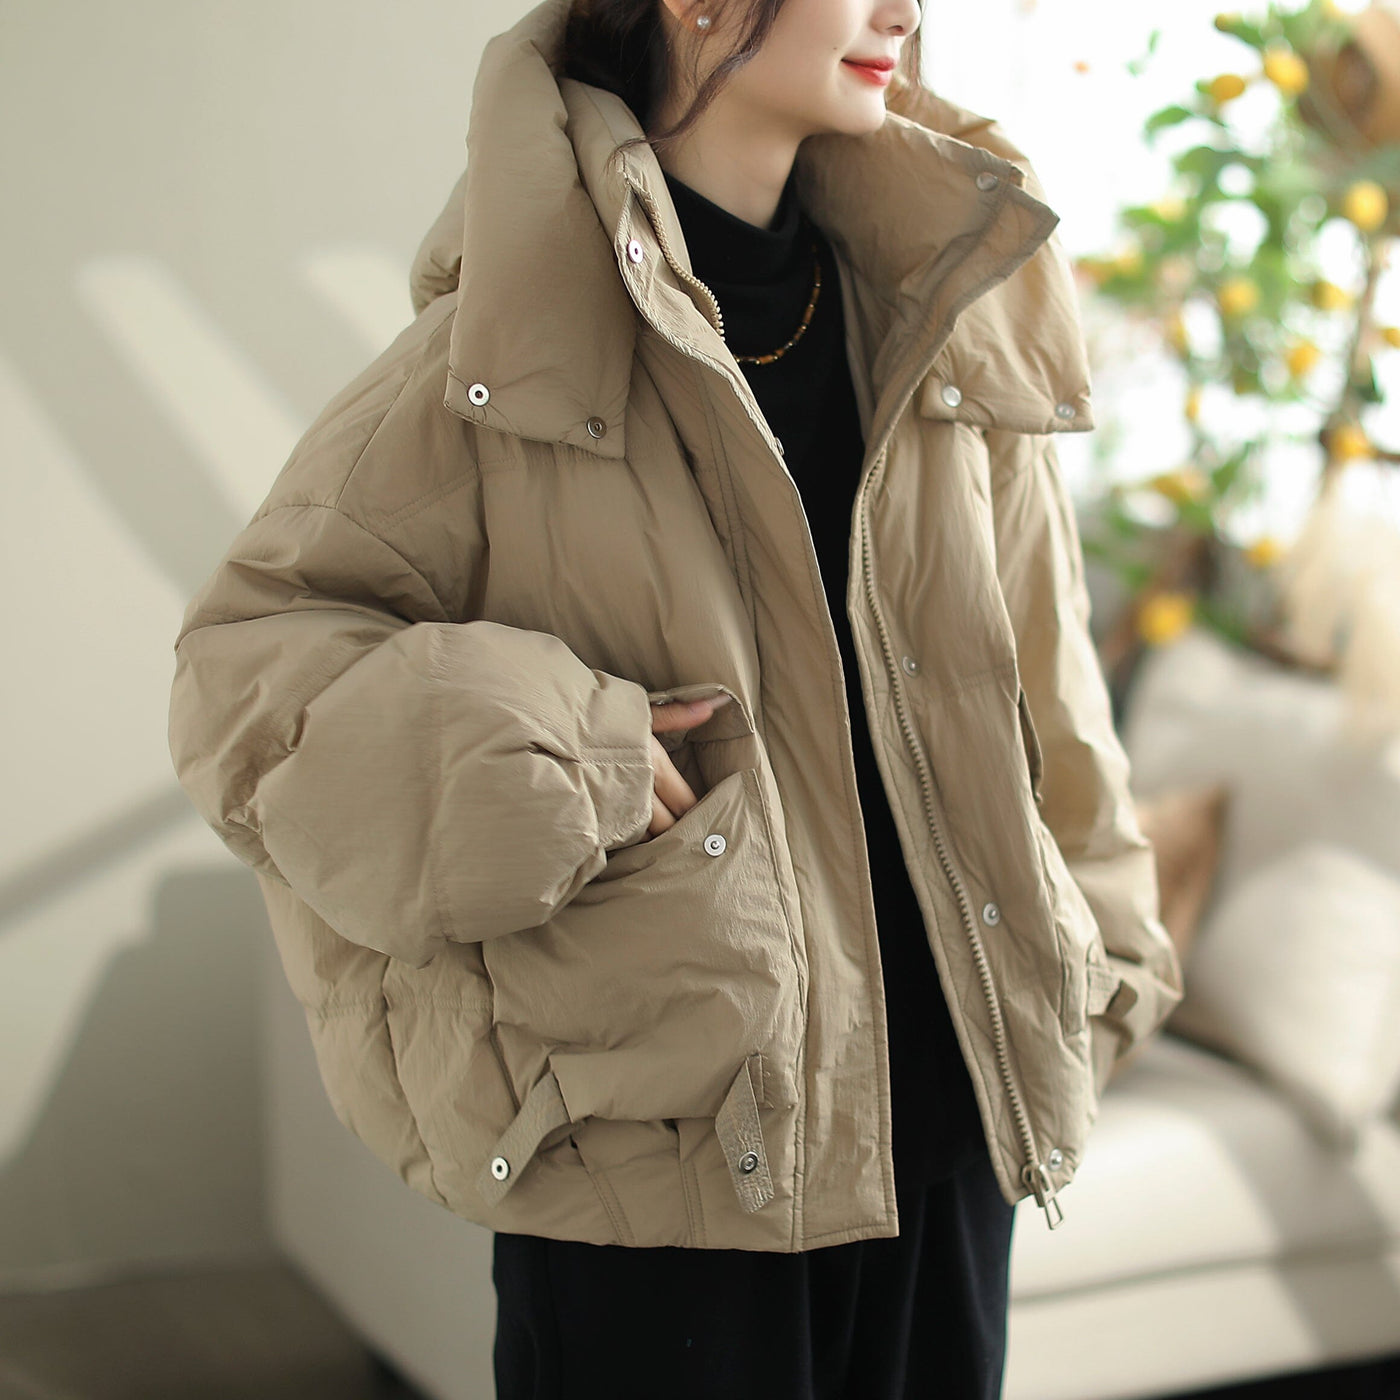 Women Winter Minimalist Casual Hooded Down Coat